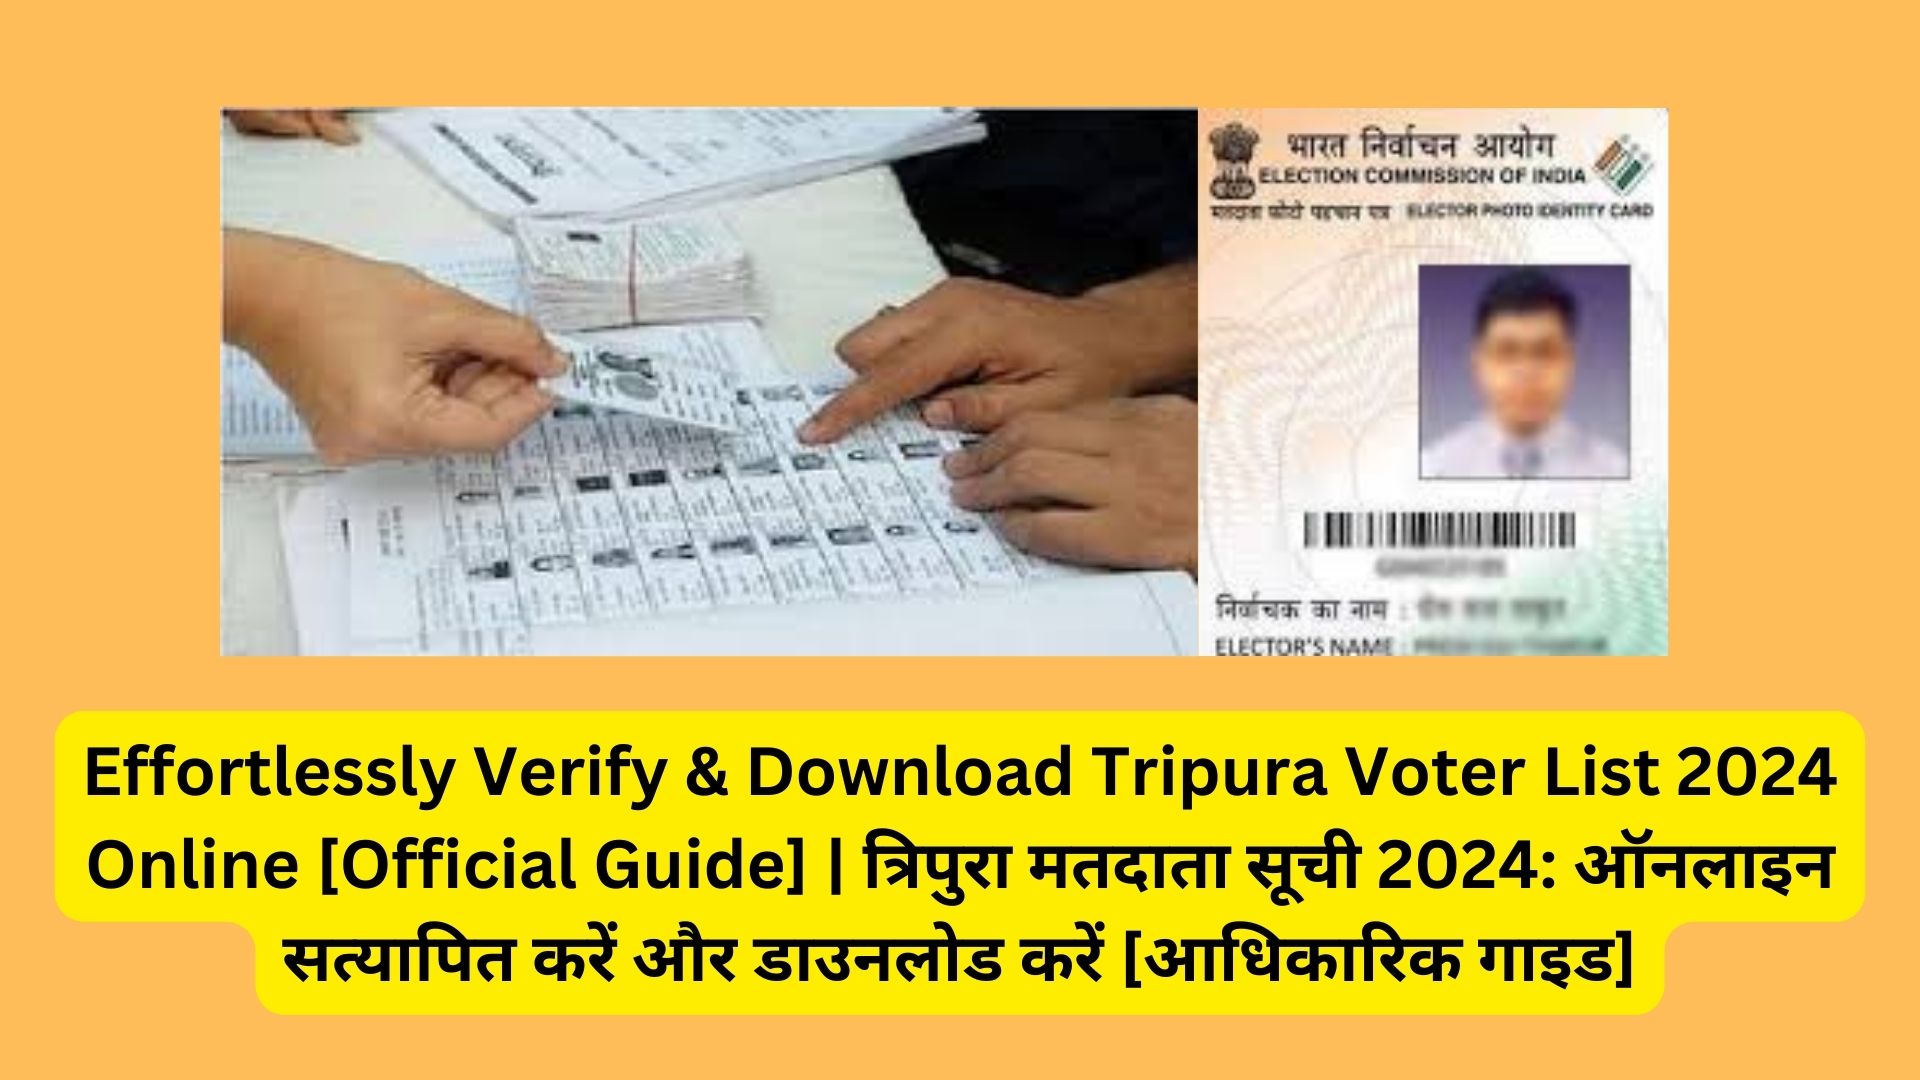 Effortlessly Verify & Download Tripura Voter List 2024 Online [Official Guide] | त्रिपुरा मतदाता सूची 2024: ऑनलाइन सत्यापित करें और डाउनलोड करें [आधिकारिक गाइड]